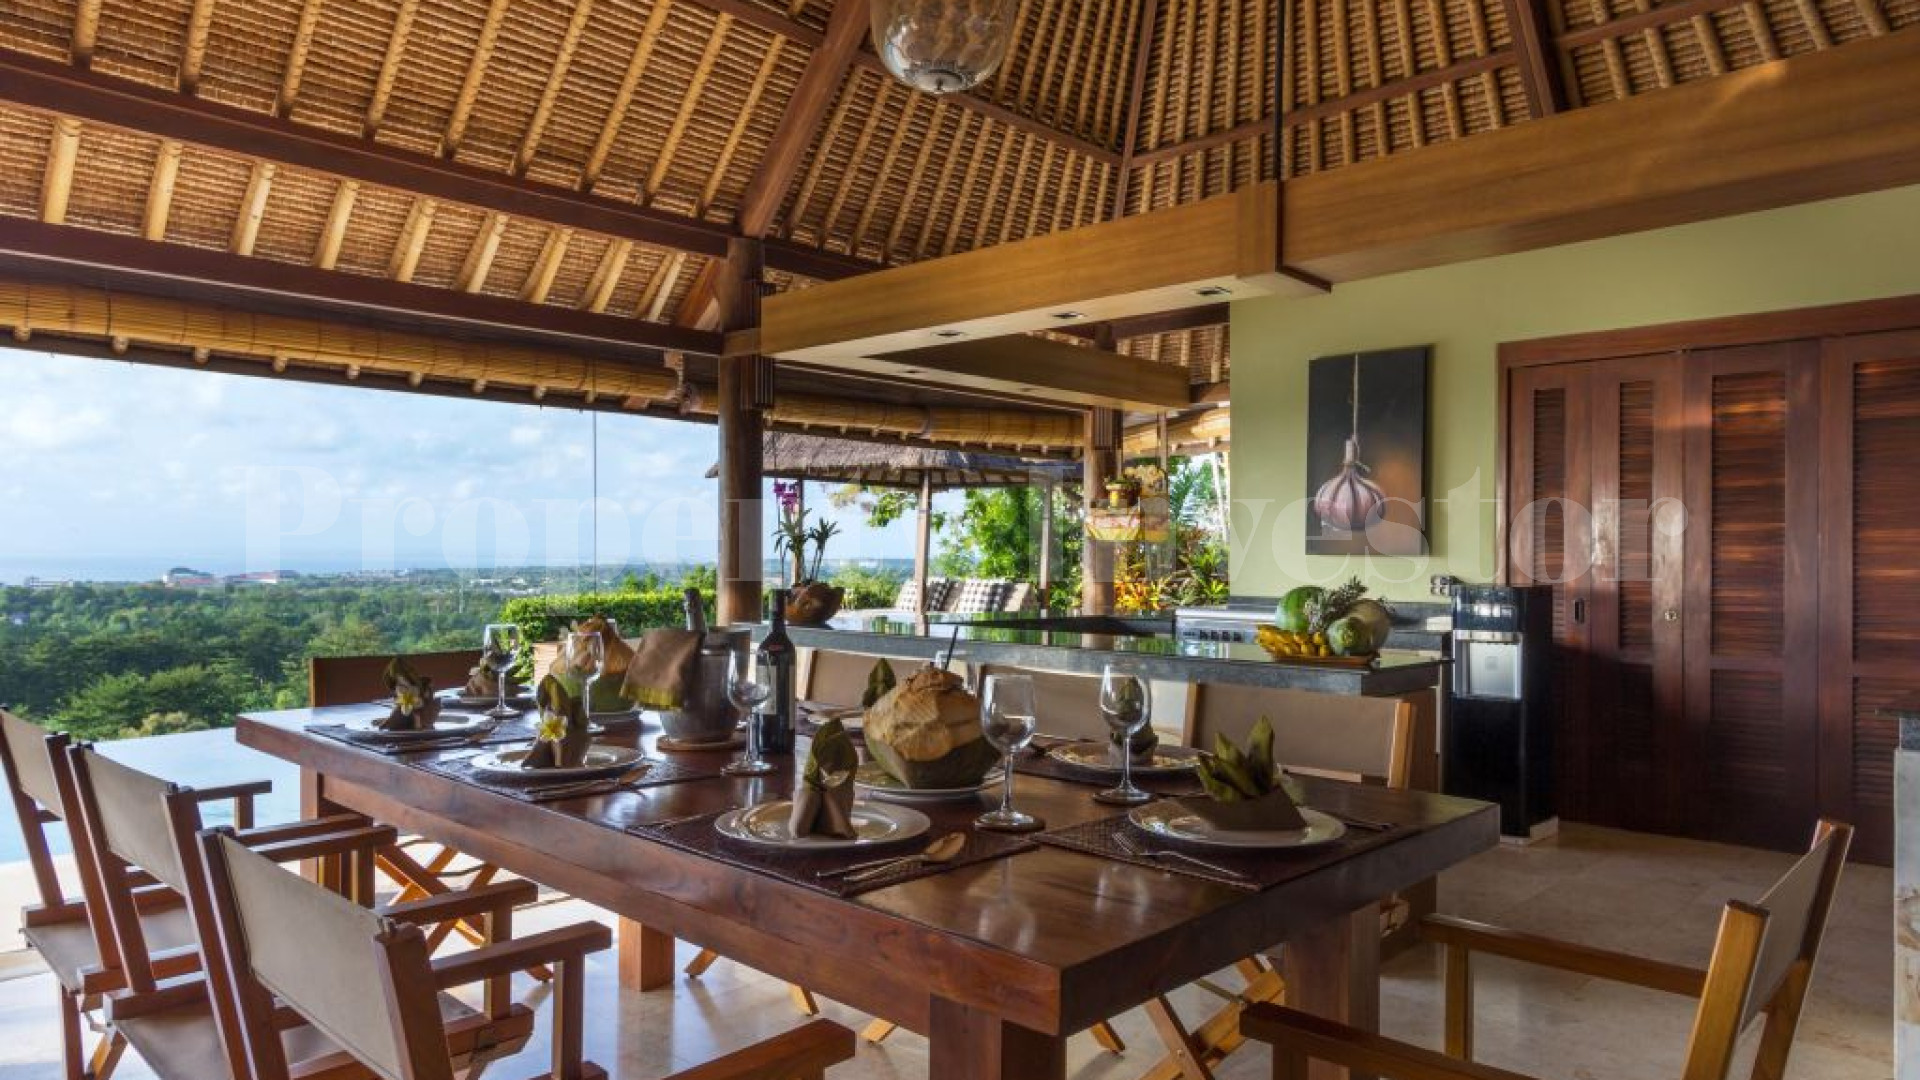 6 Bedroom Luxury Villa with Unobstructed Ocean Views for Sale in Pecatu, Bali